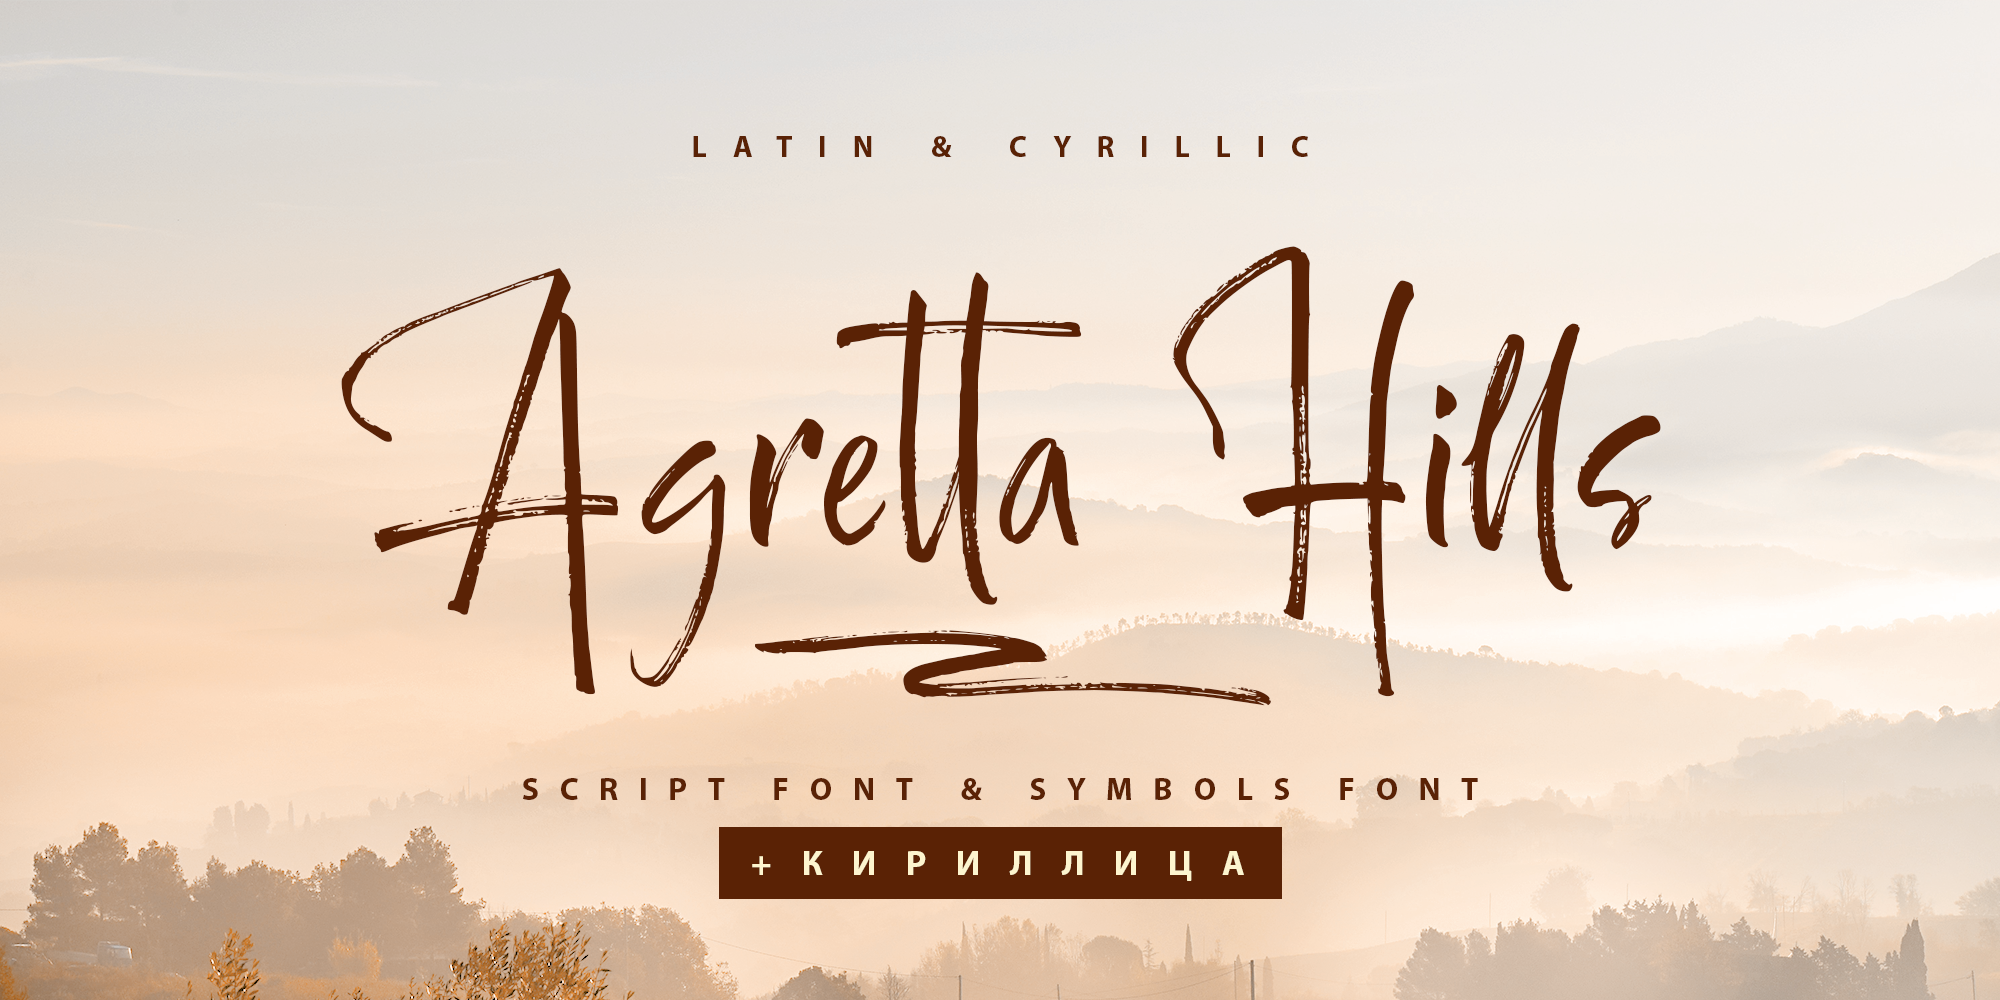 Agretta Hills Cyrillic